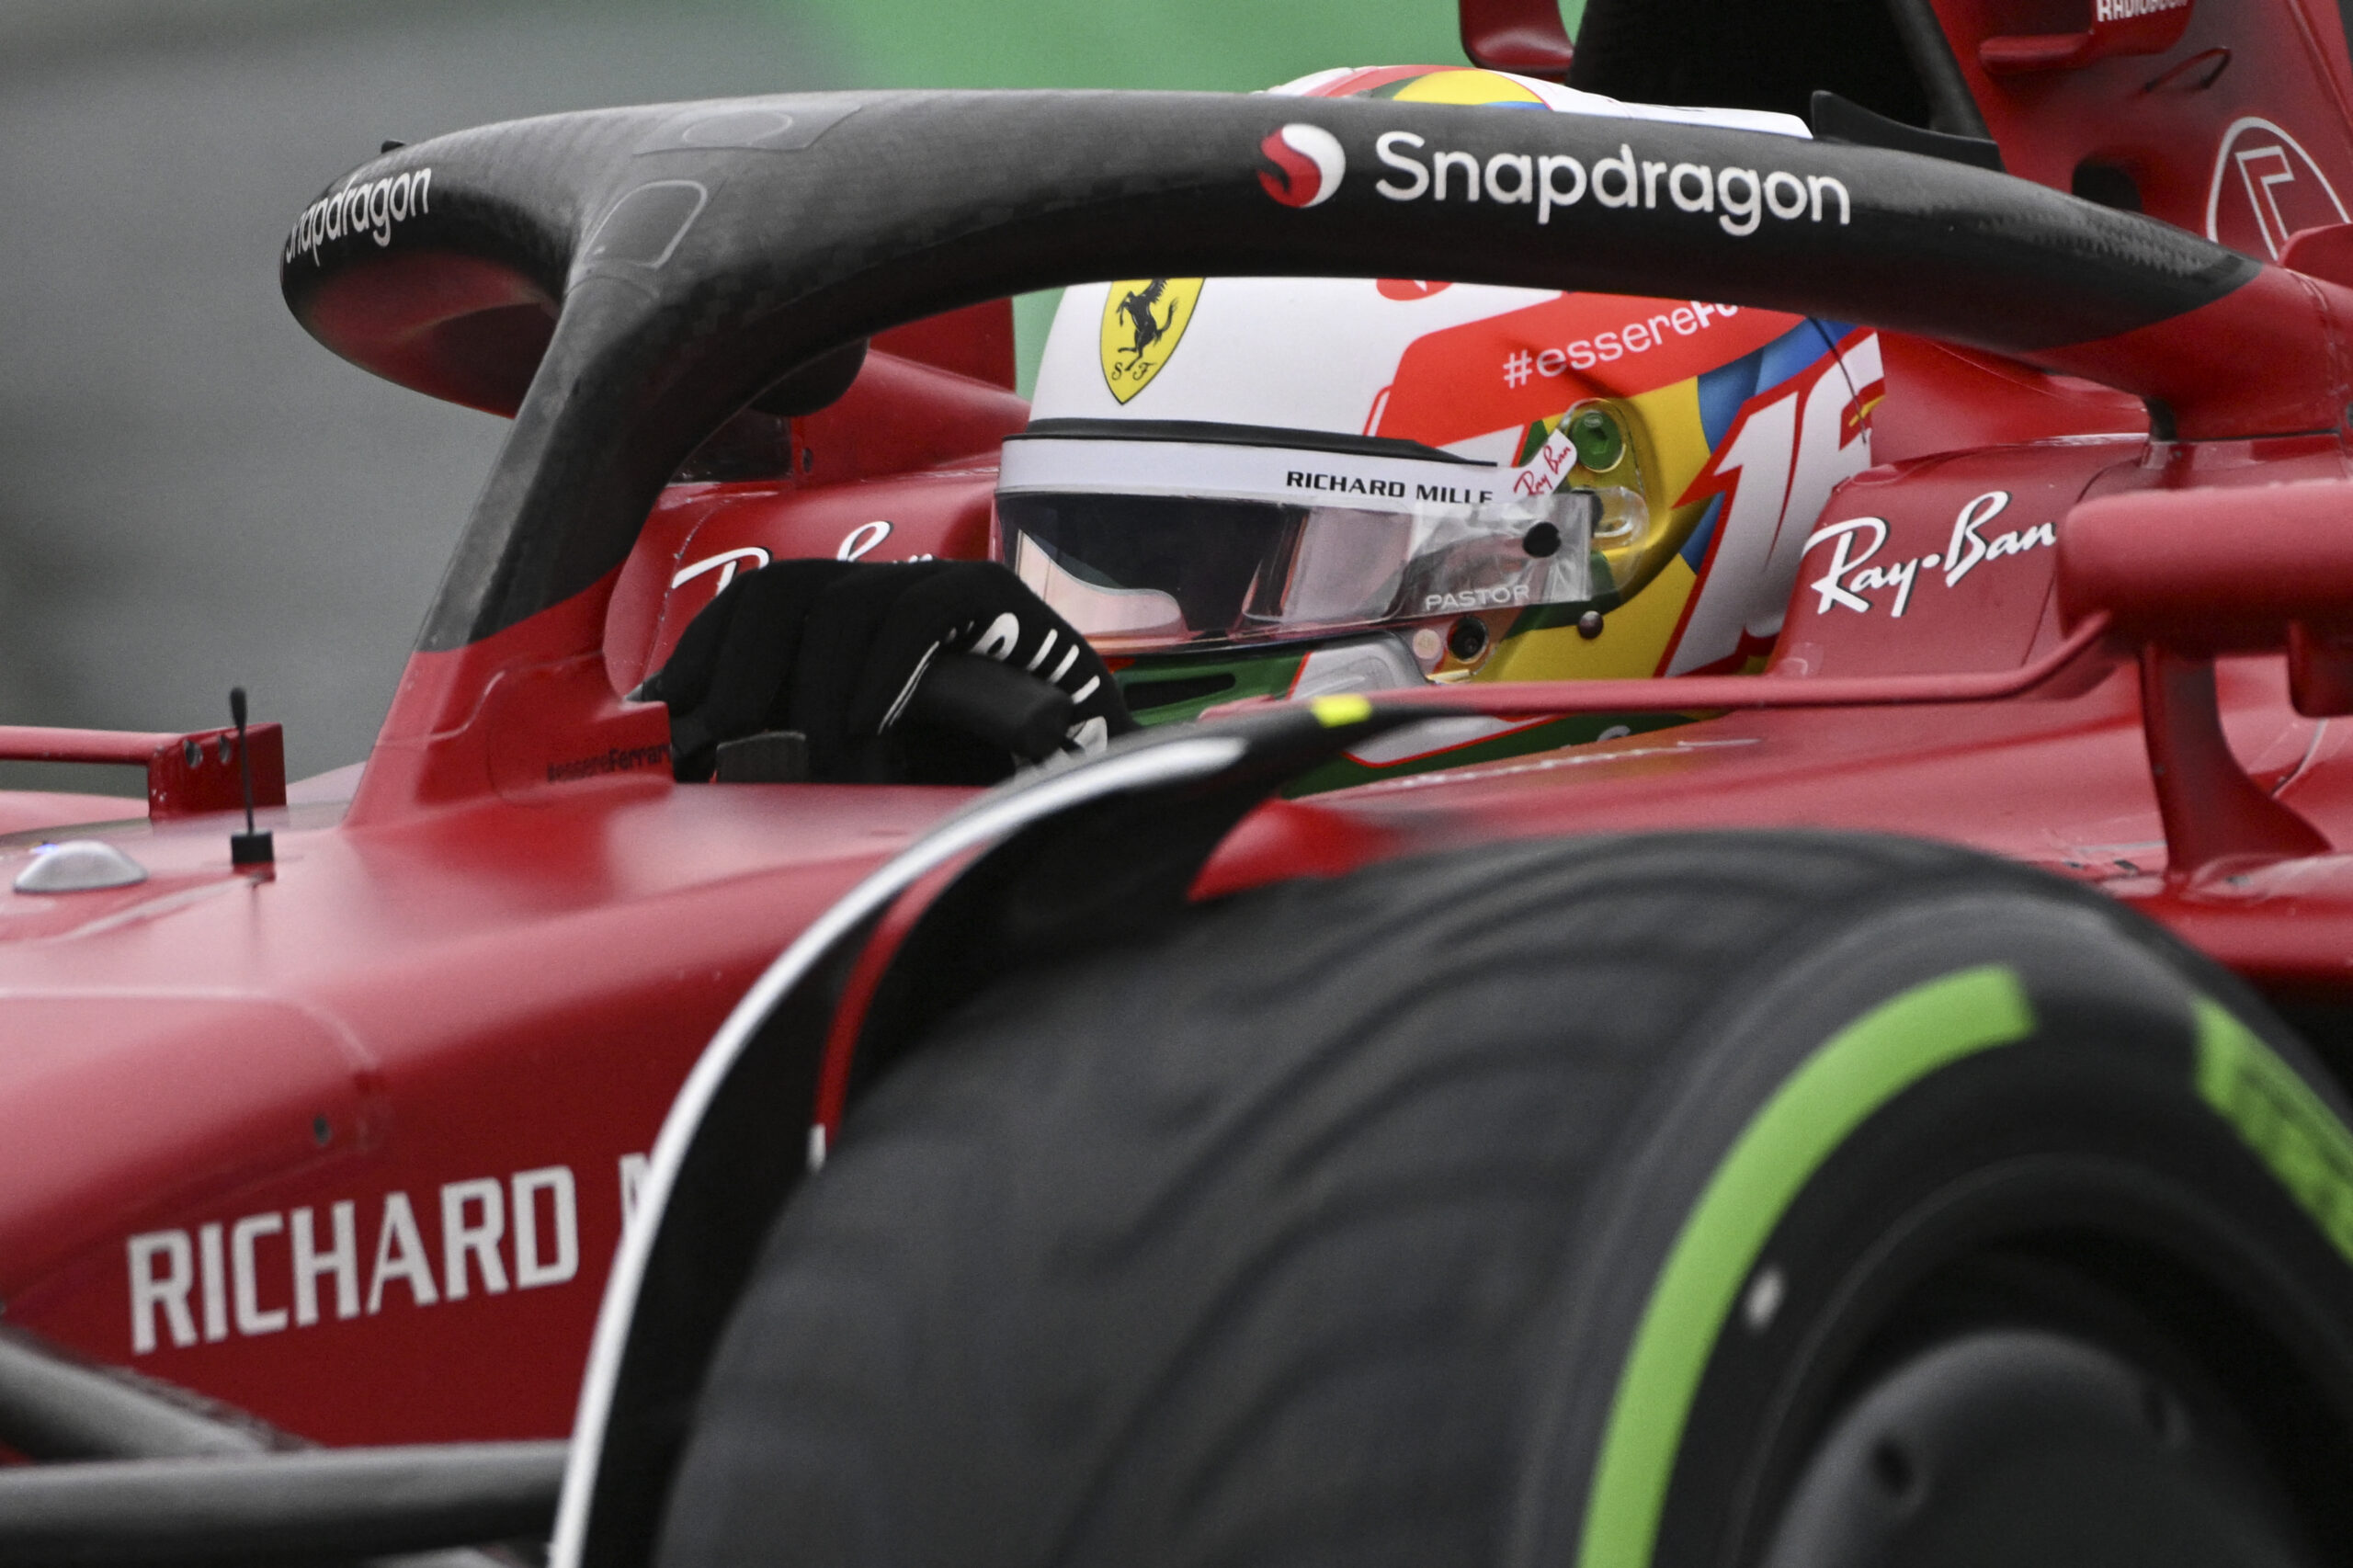 Leclerc se recupera após sexta e lidera TL3 chuvoso na Inglaterra - Notícia  de Fórmula 1 - Grande Prêmio